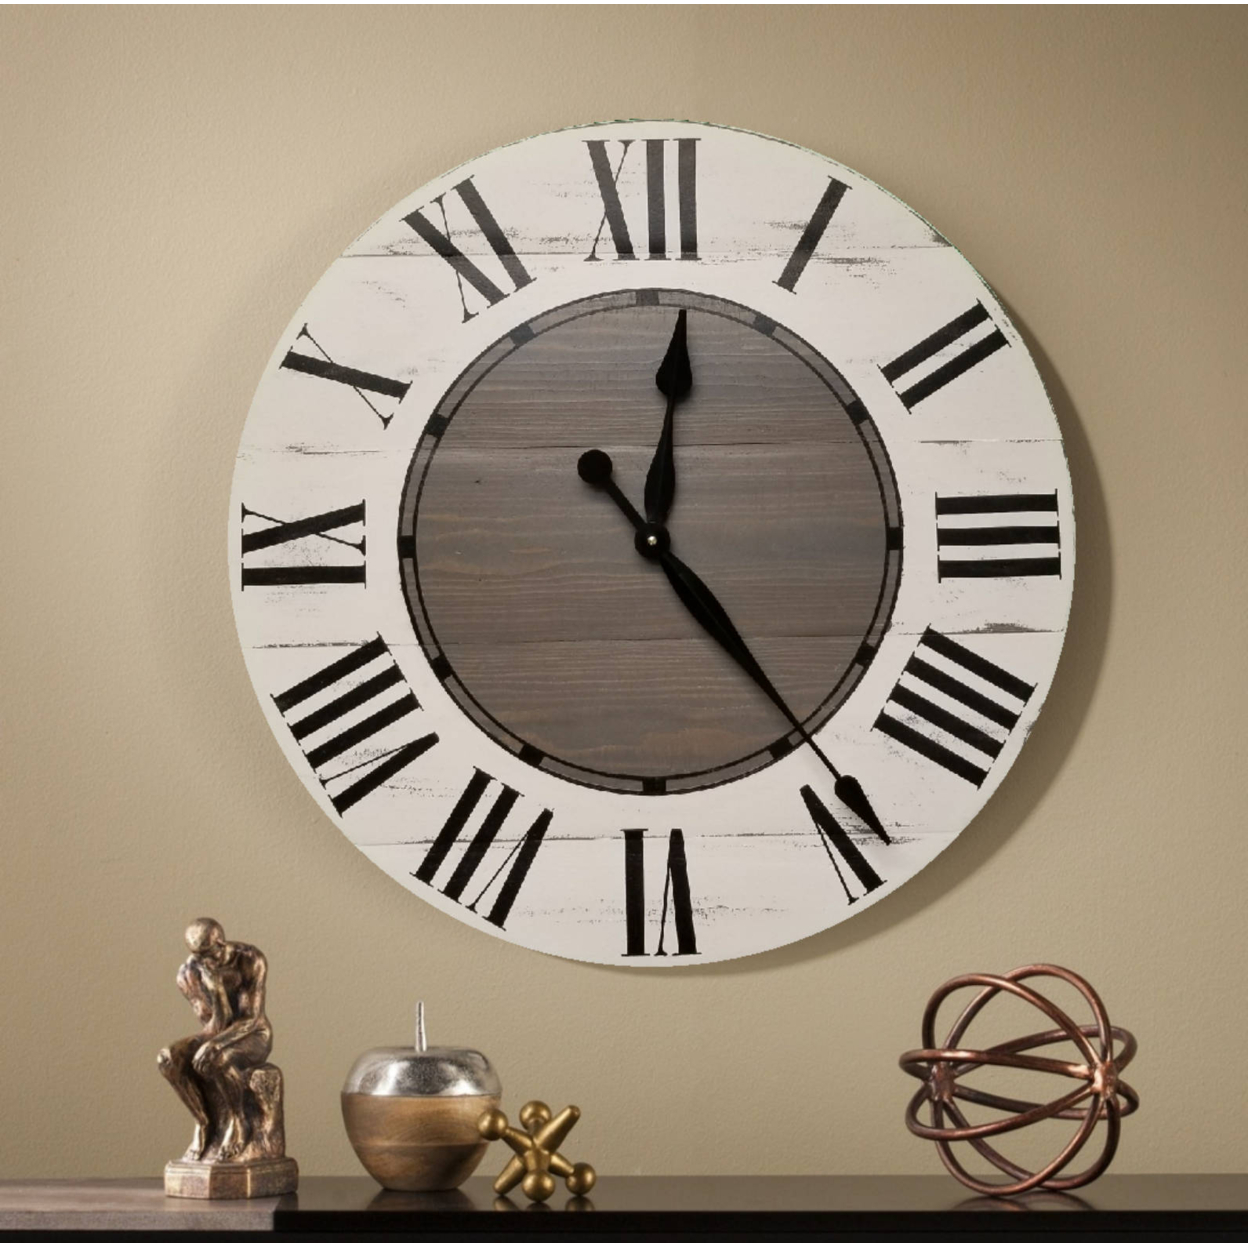 The Tovie Farmhouse clock - rustic clock - oversized wall clock - big clock - large clock - farmhouse decor - rustic decor - - 30 NCH